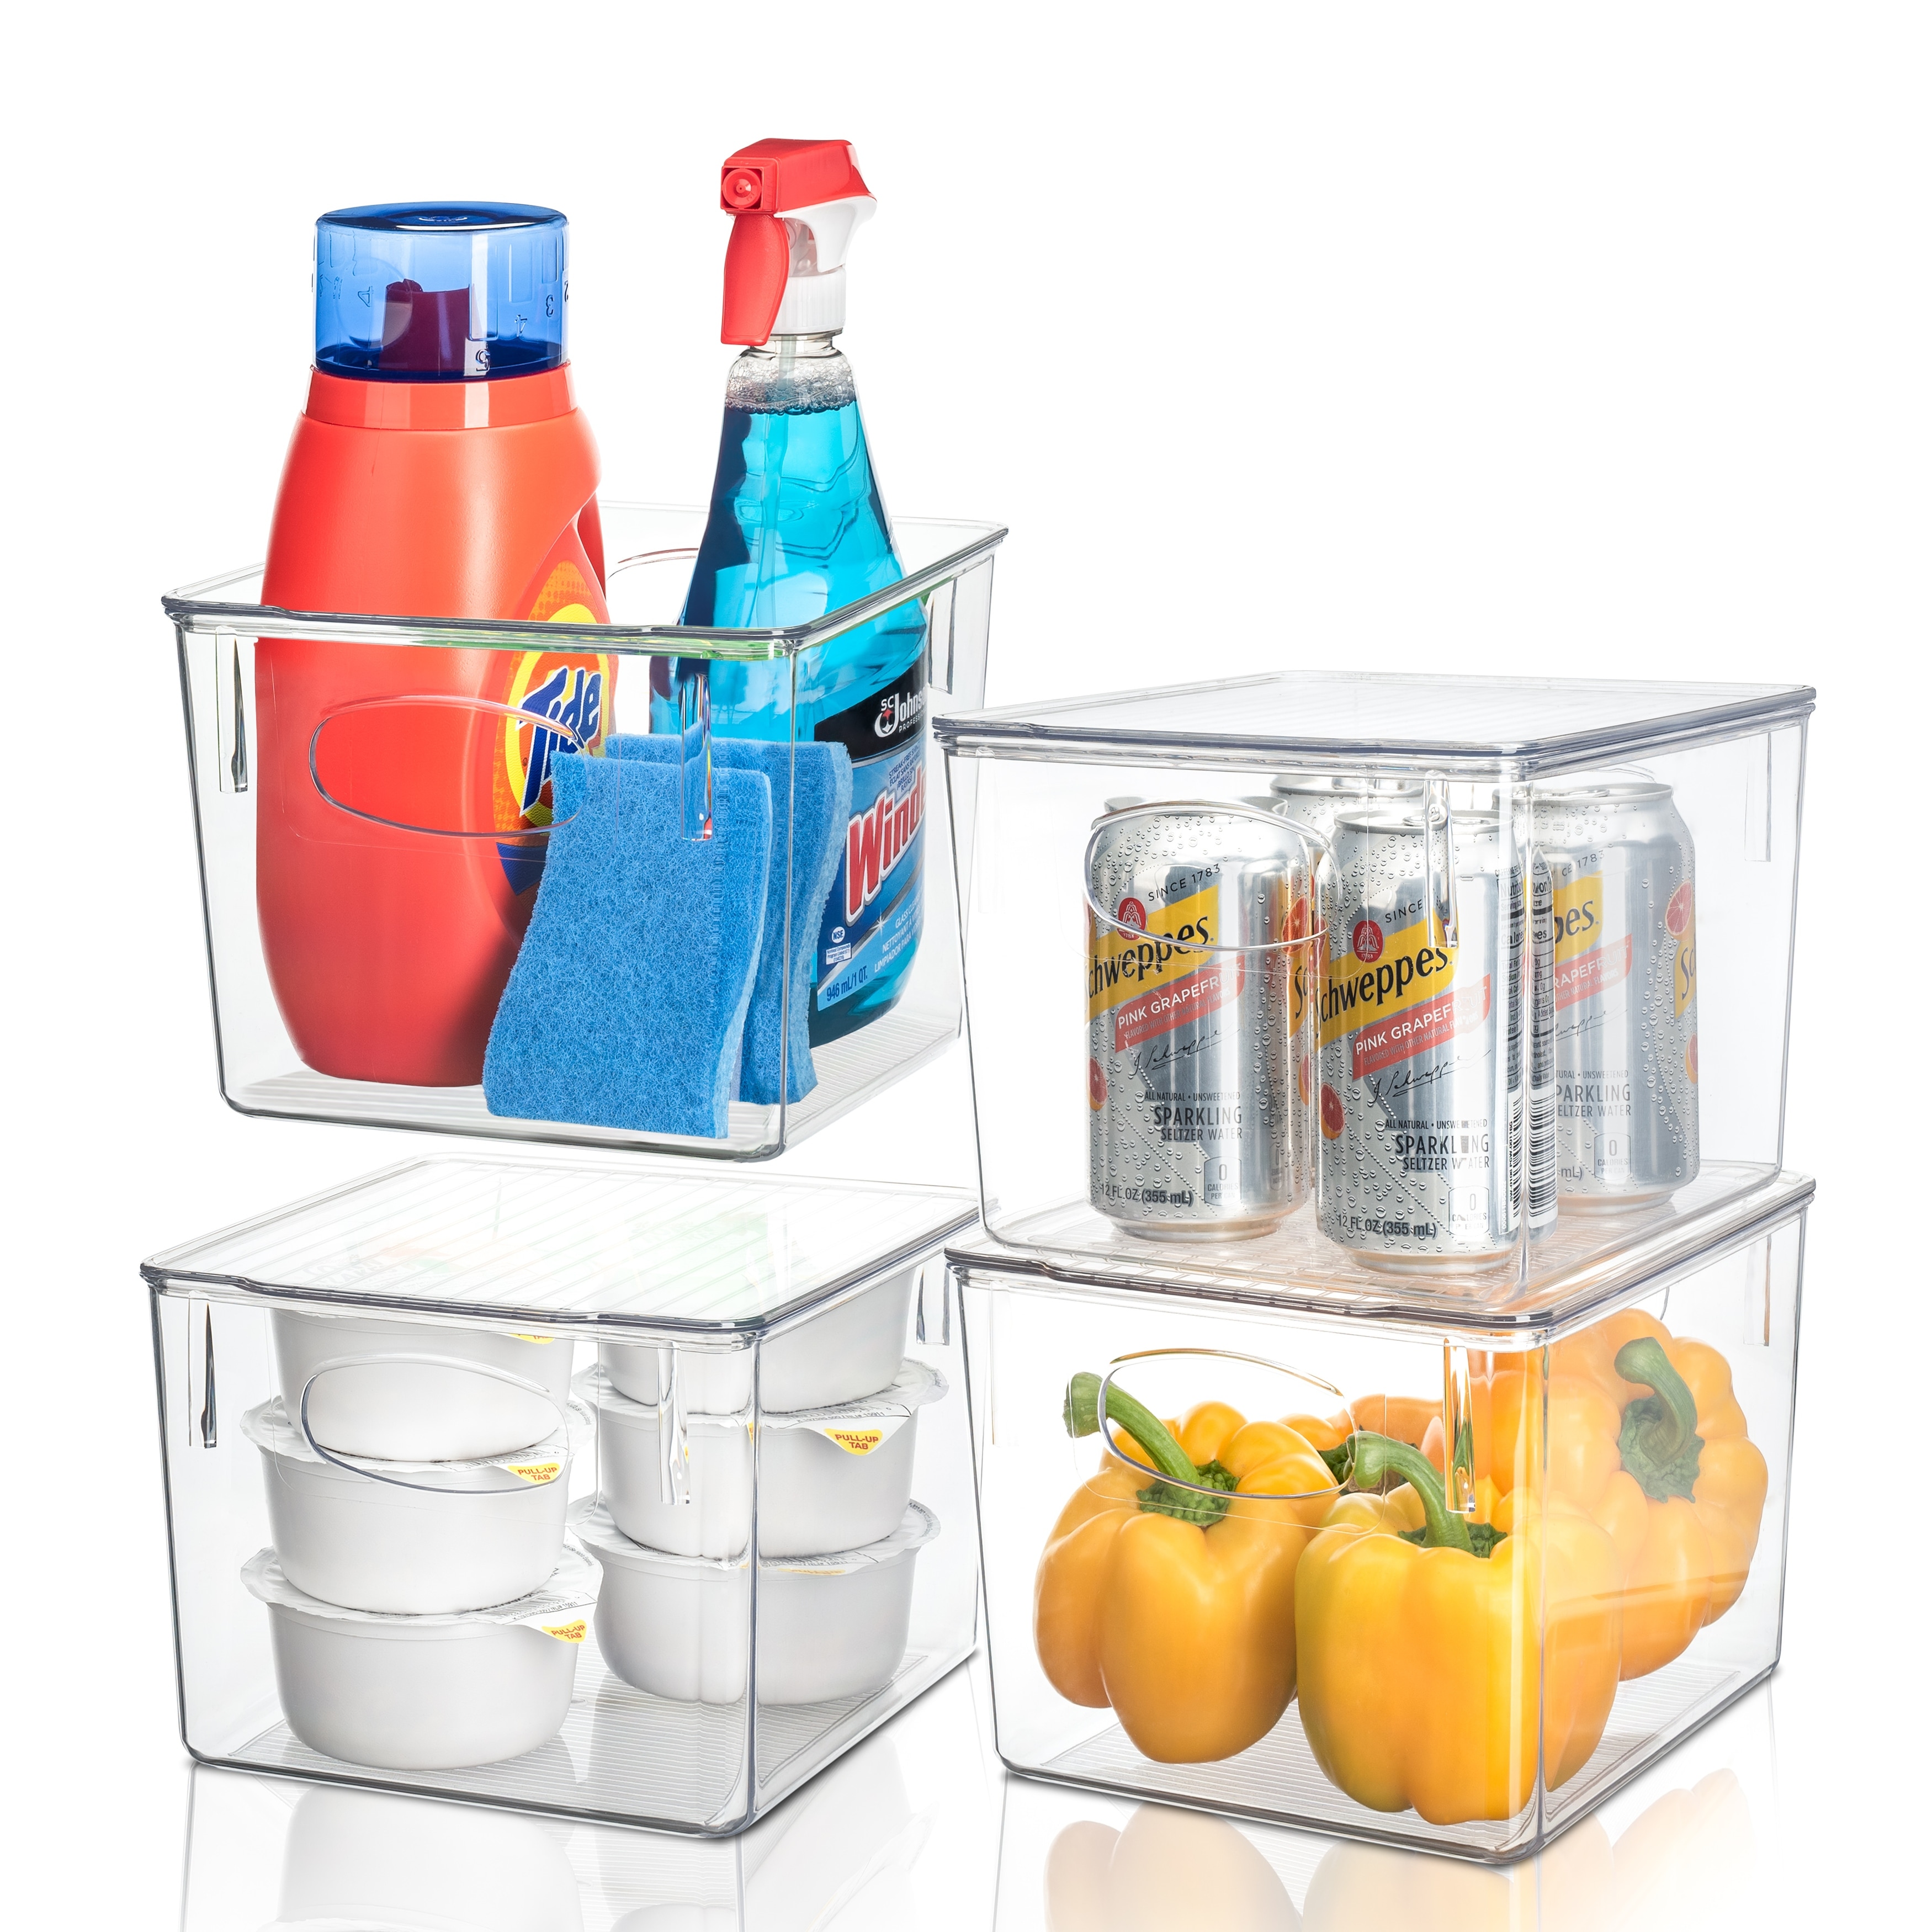  WEJIPP Freezer Organizer Bins Food Storage Container